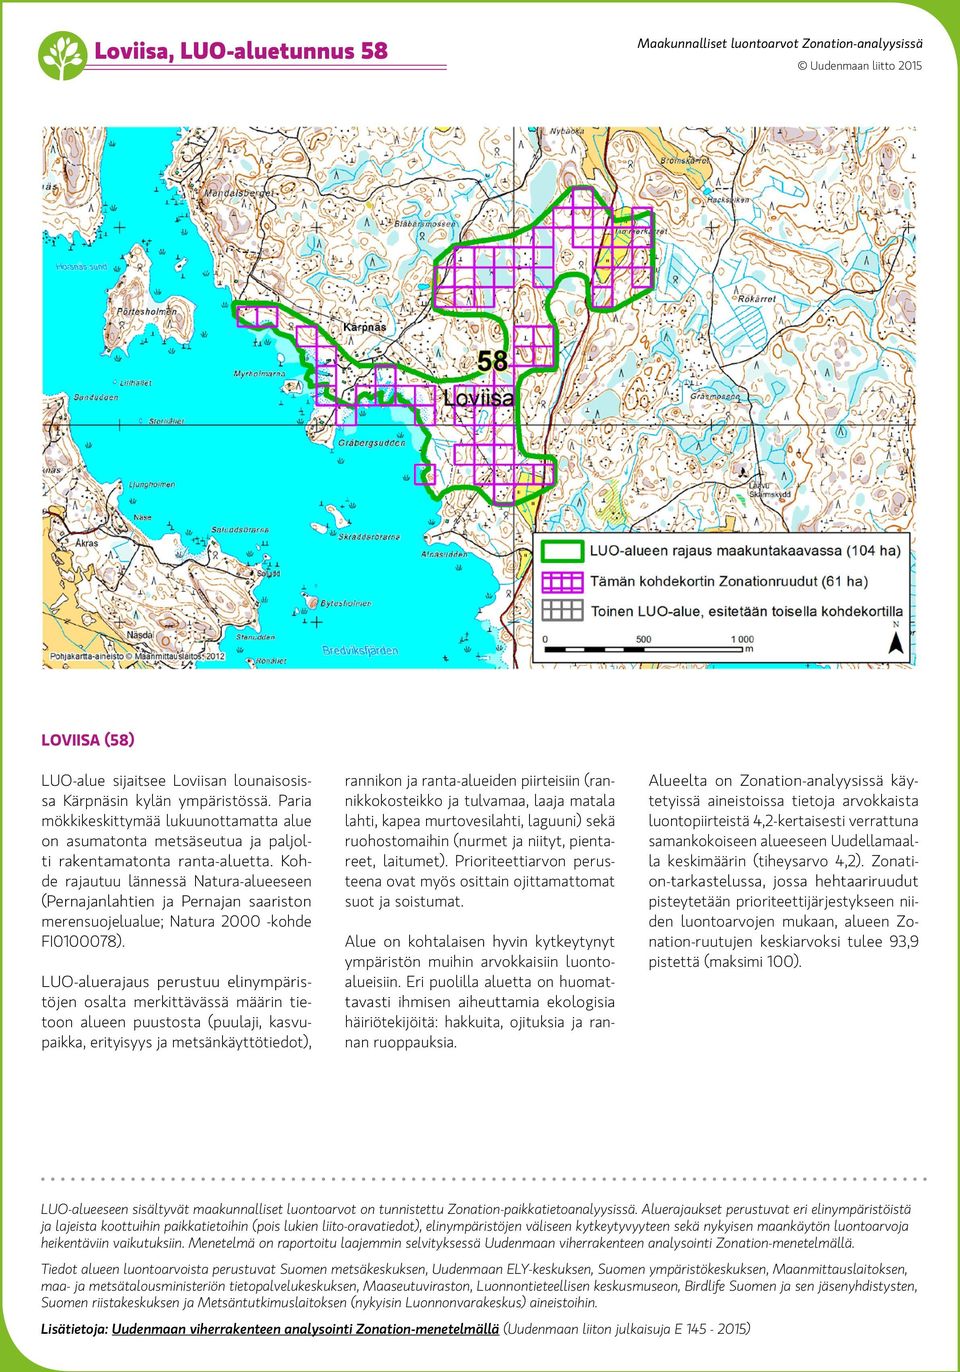 Kohde rajautuu lännessä Natura-alueeseen (Pernajanlahtien ja Pernajan saariston merensuojelualue; Natura 2000 -kohde FI0100078).